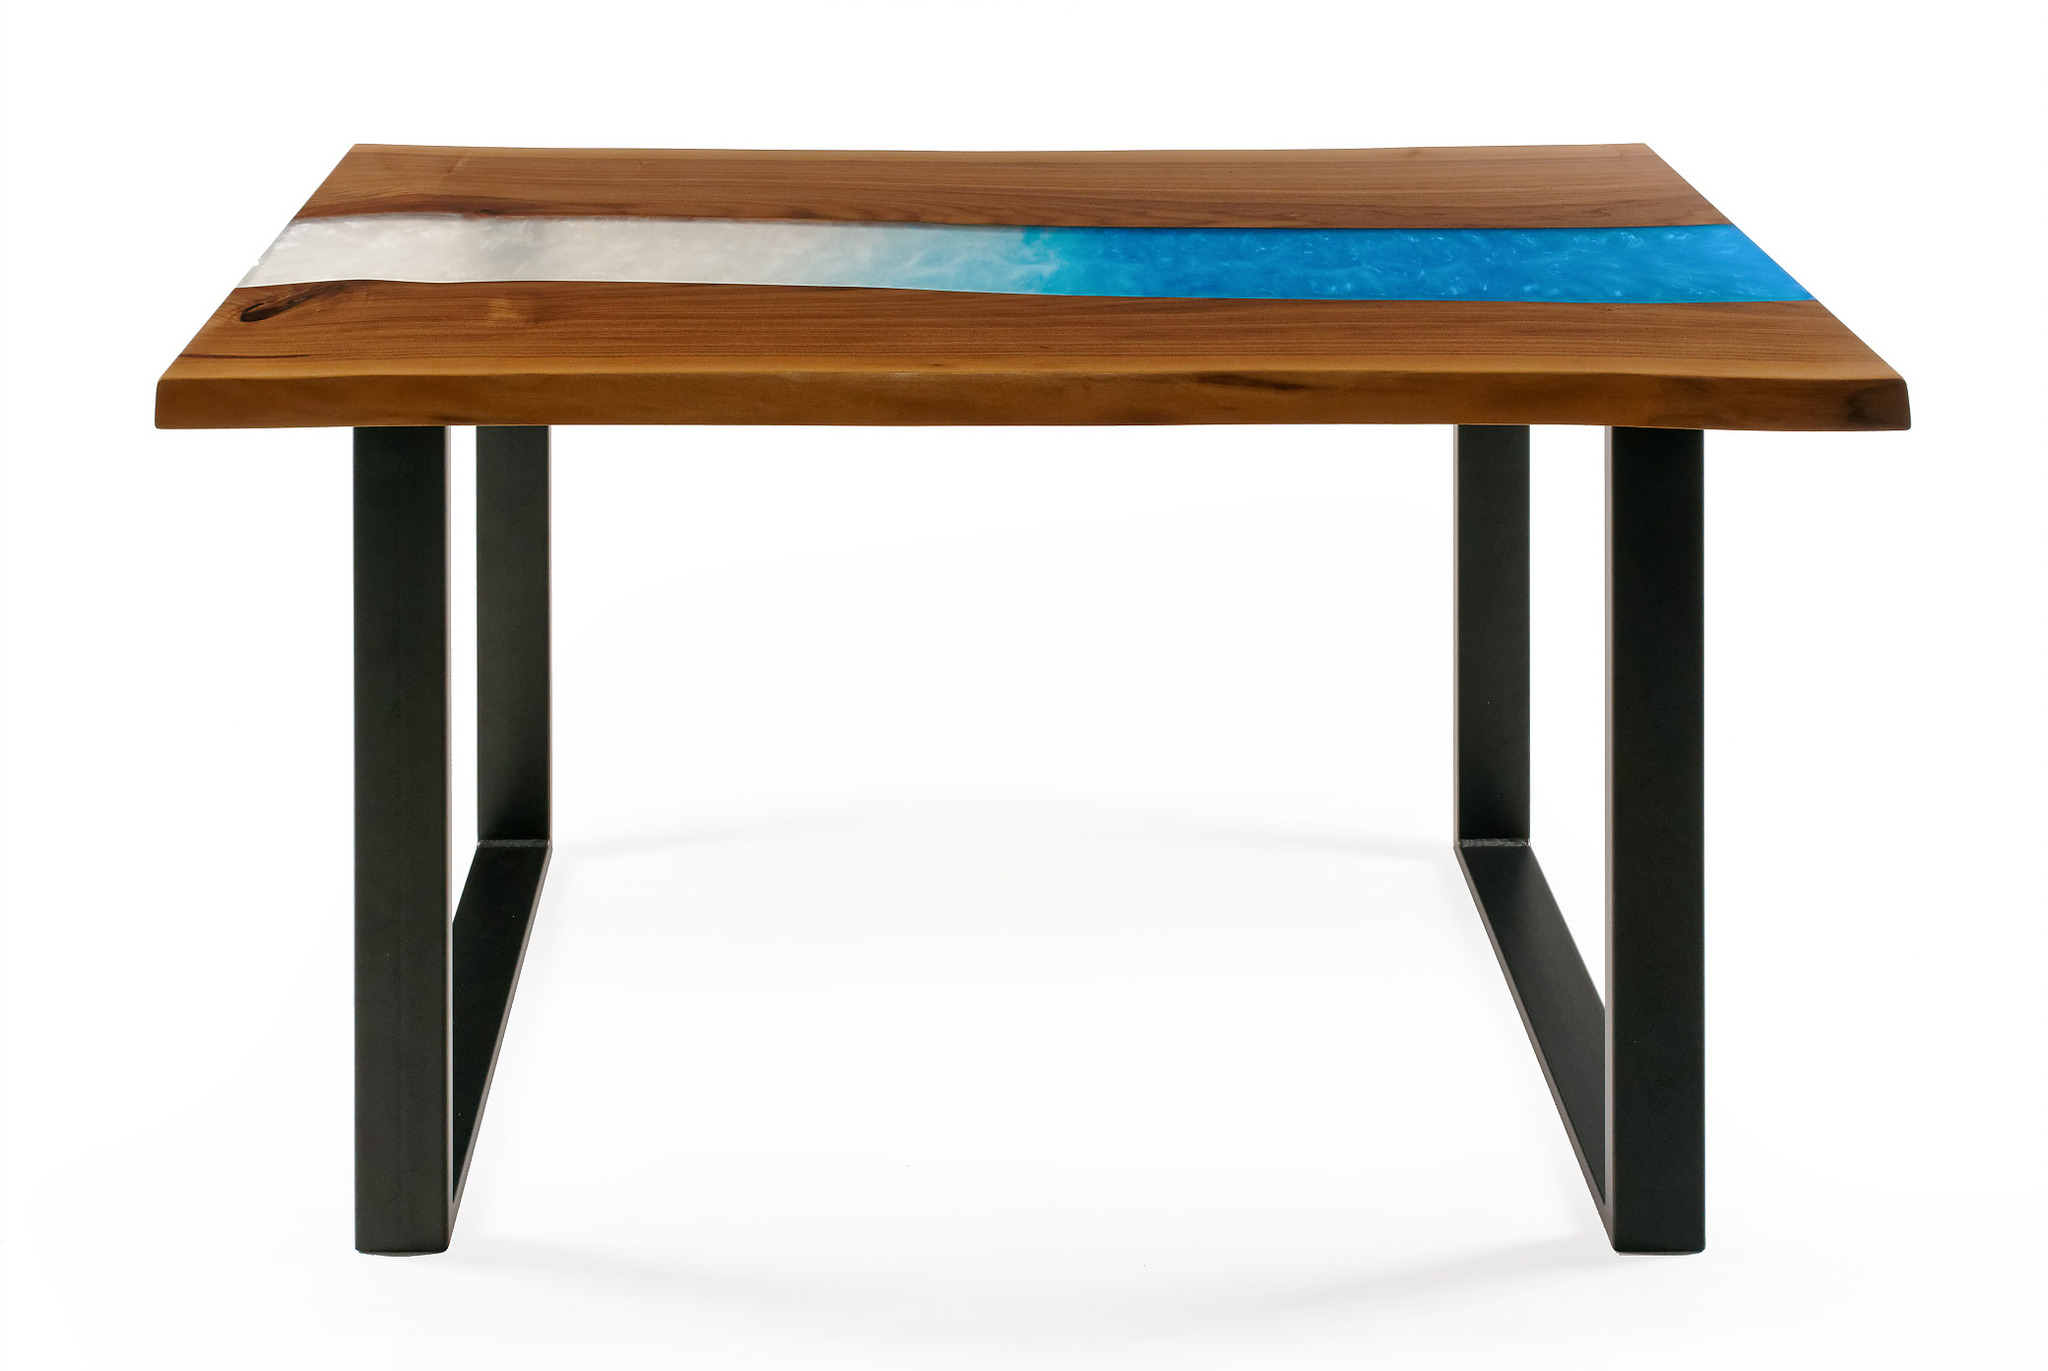 Atlás - stůl z ořechového dřeva s bílo-modrou epoxidovou pryskyřicí